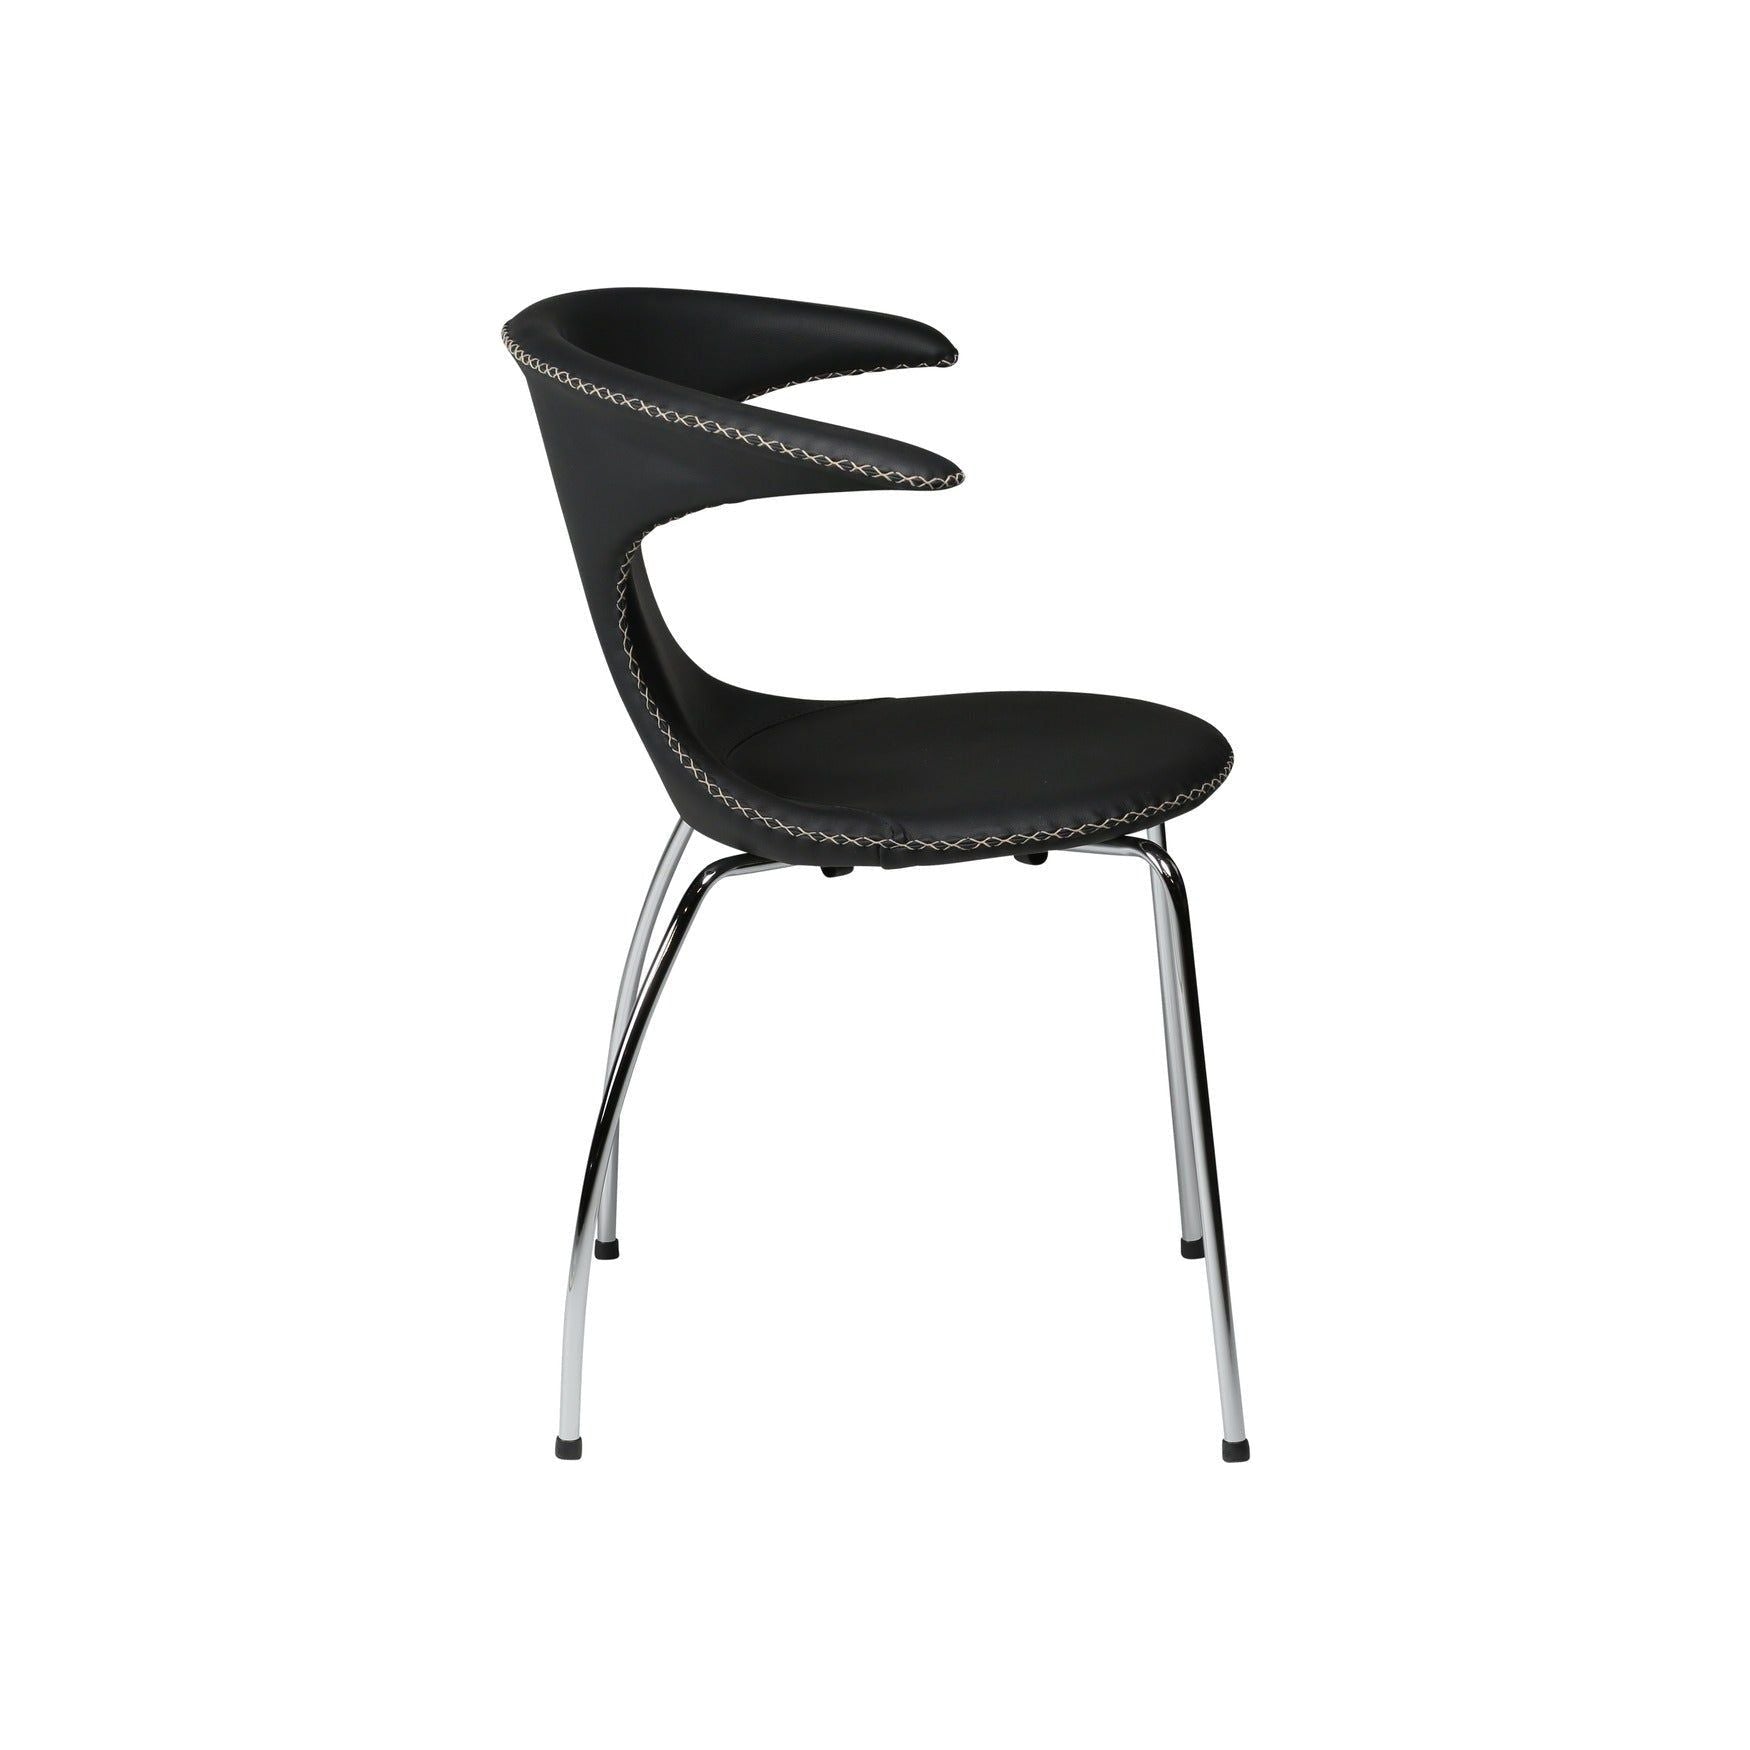 FLAIR kėdė, juoda spalva, metalinės kojos